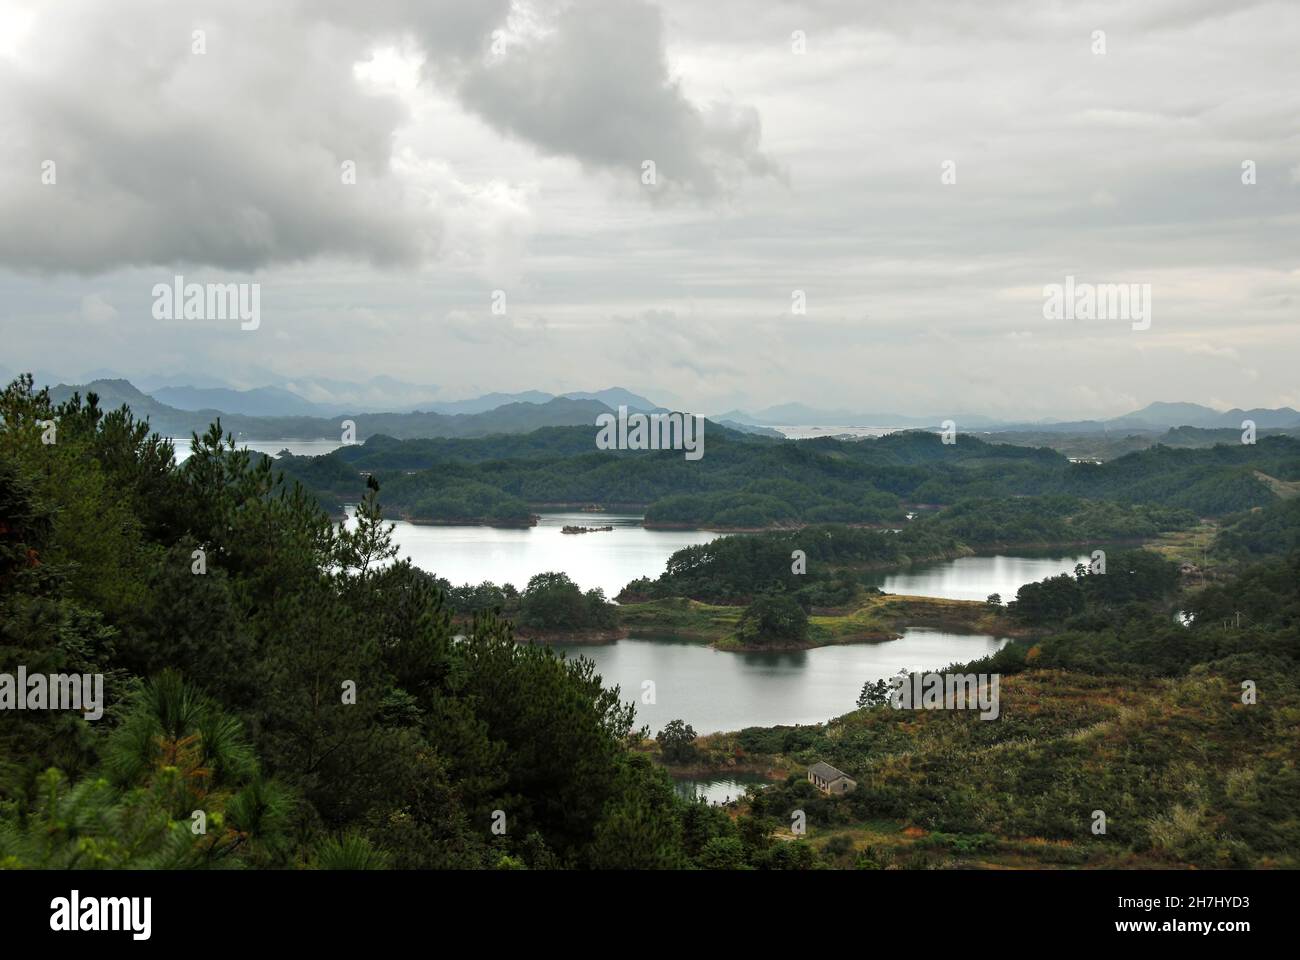 Qiandao Hu, province de Zhejiang, Chine : vue sur le lac et les îles avec forêt de premier plan.Qiandao Hu se traduit par Thousand Island Lake. Banque D'Images